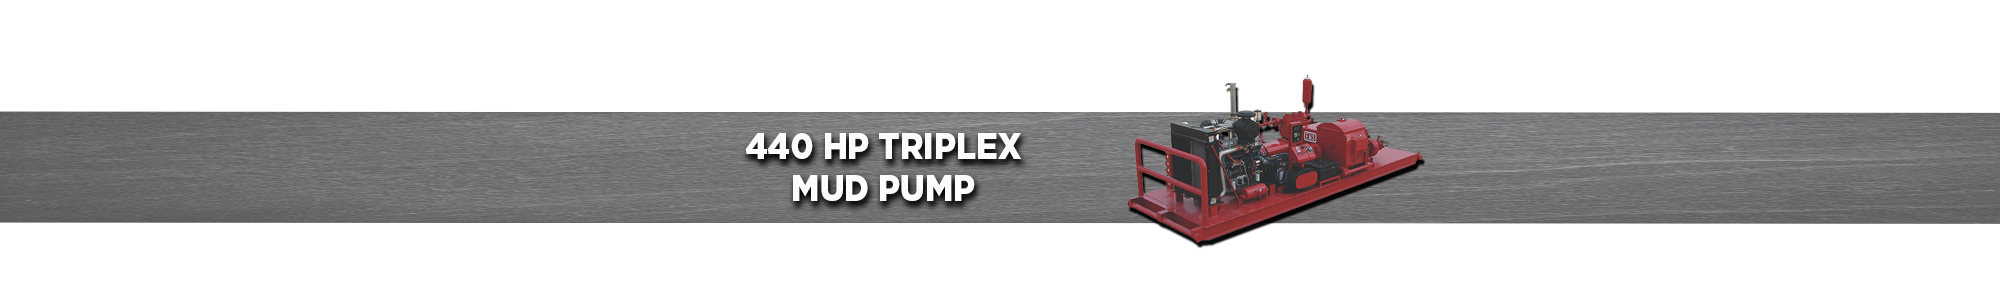 440 HP Triplex Mud Pump